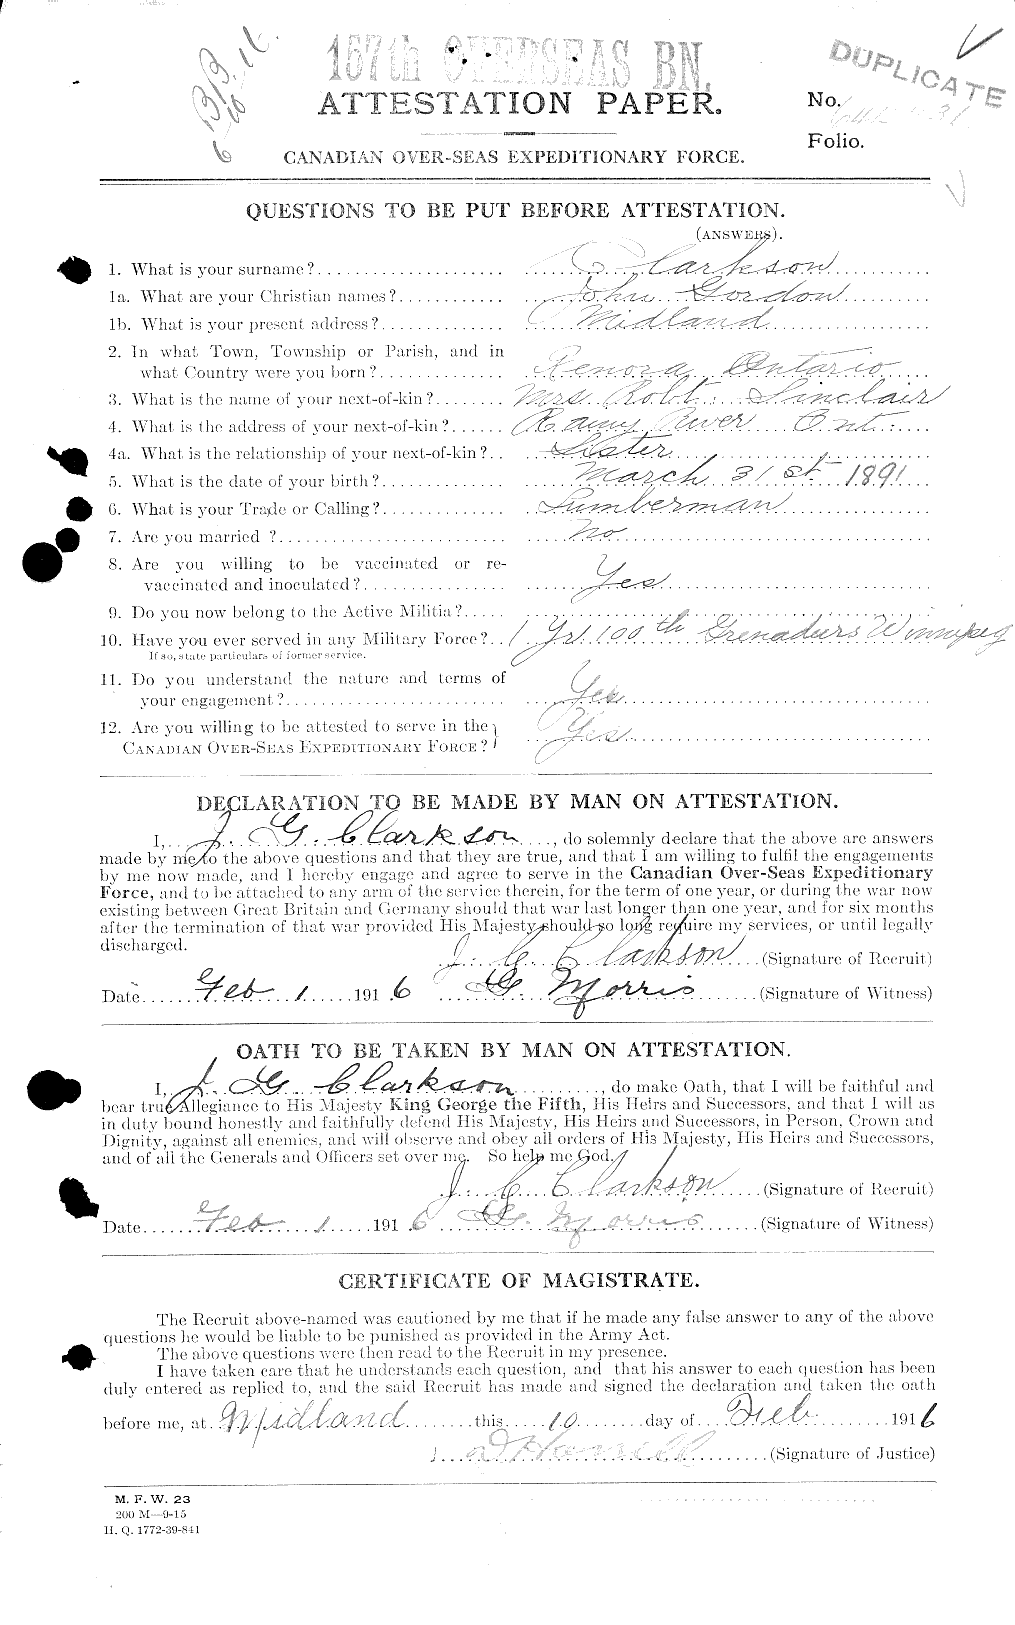 Dossiers du Personnel de la Première Guerre mondiale - CEC 021456a